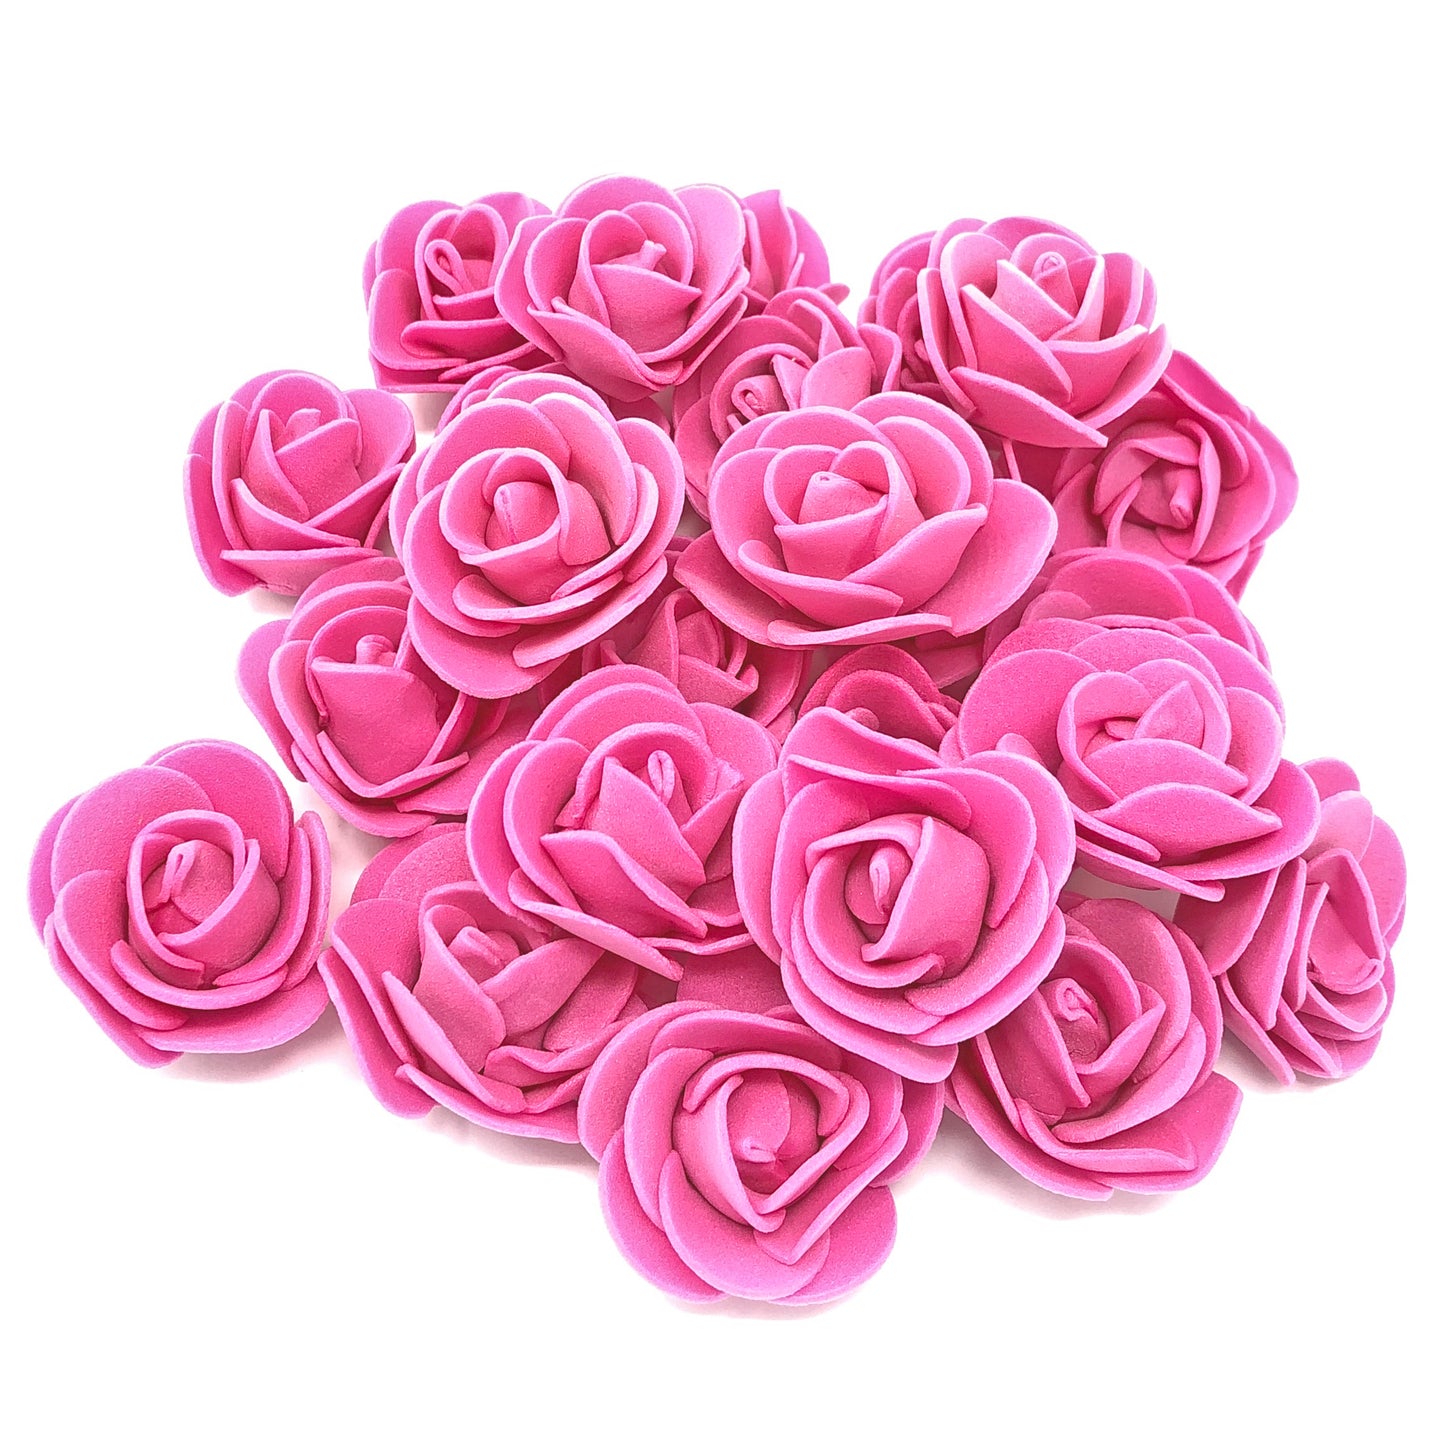 Pink 30mm Foam Rose Flowers